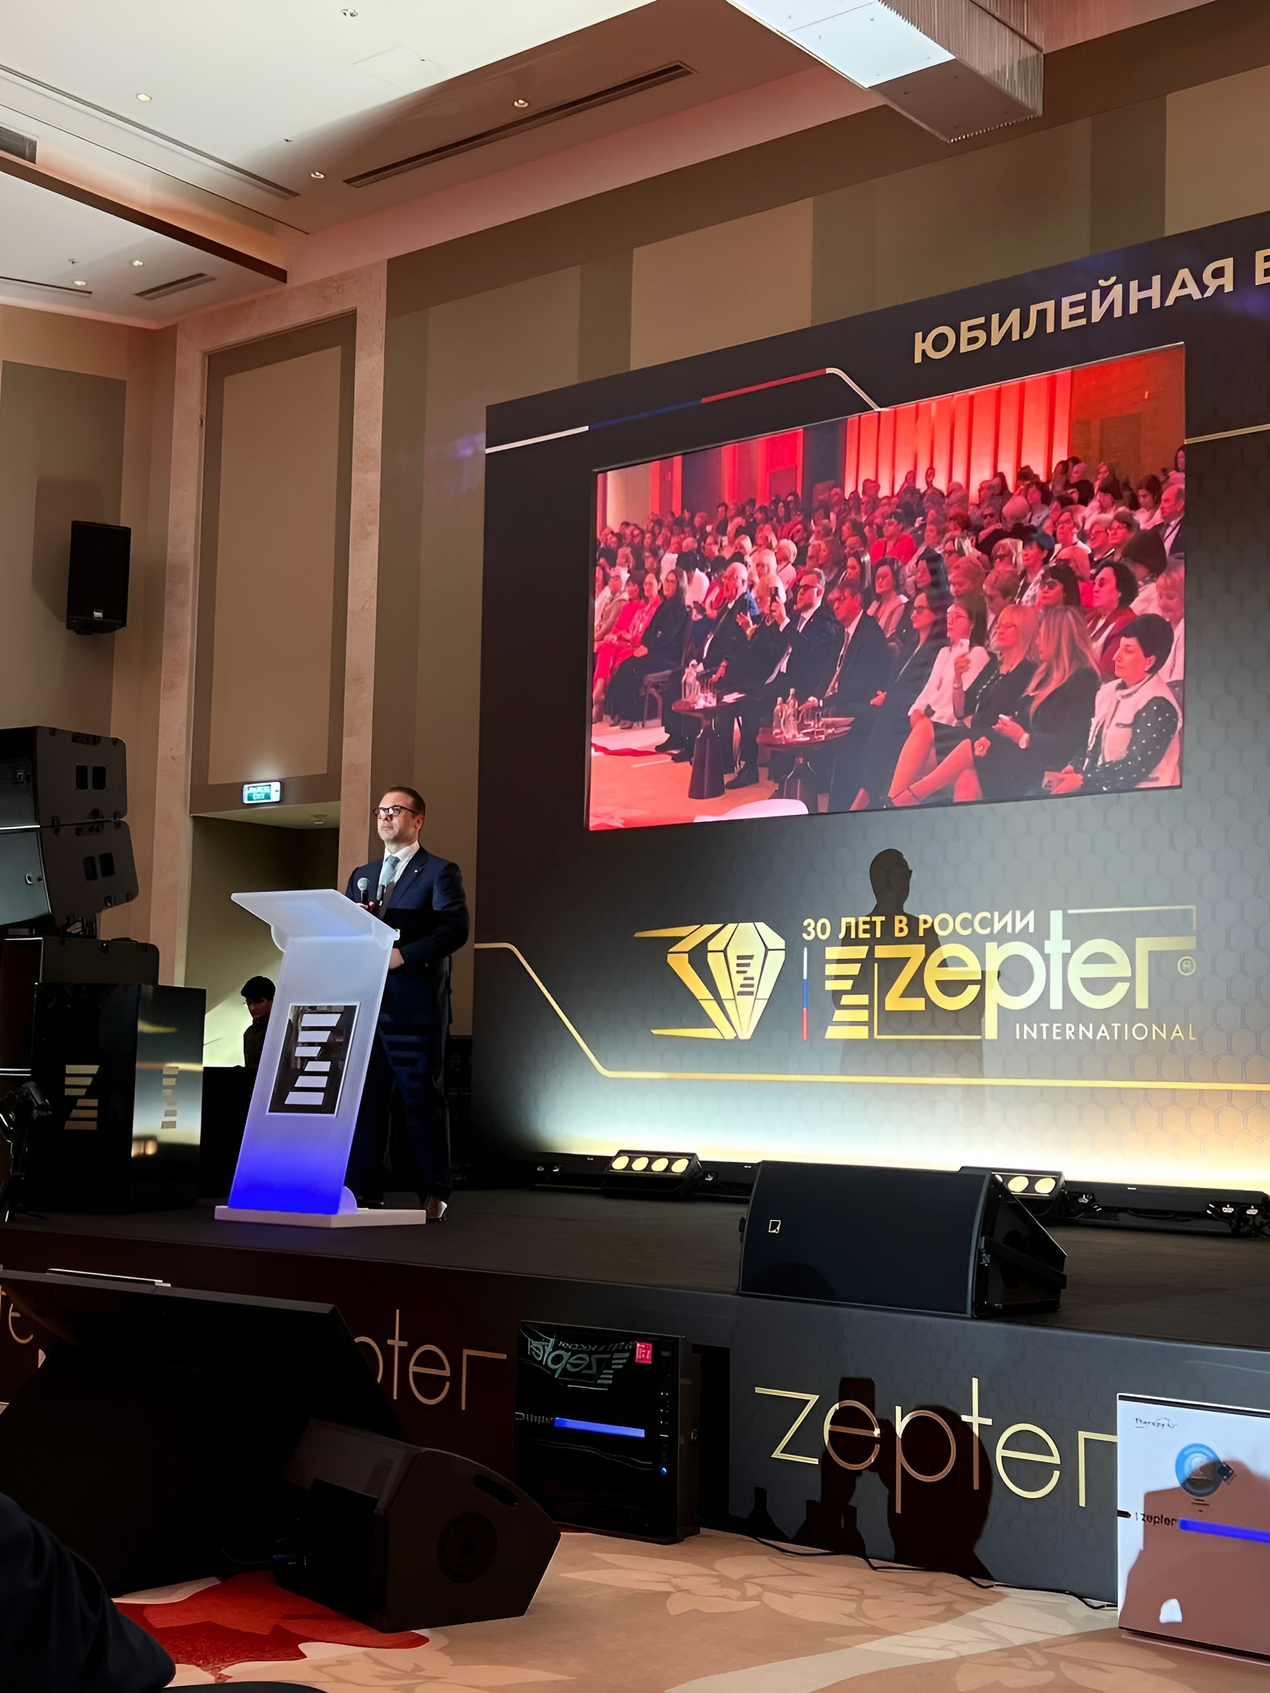 Компания Zepter отпраздновала свое 30-летие на российском рынке